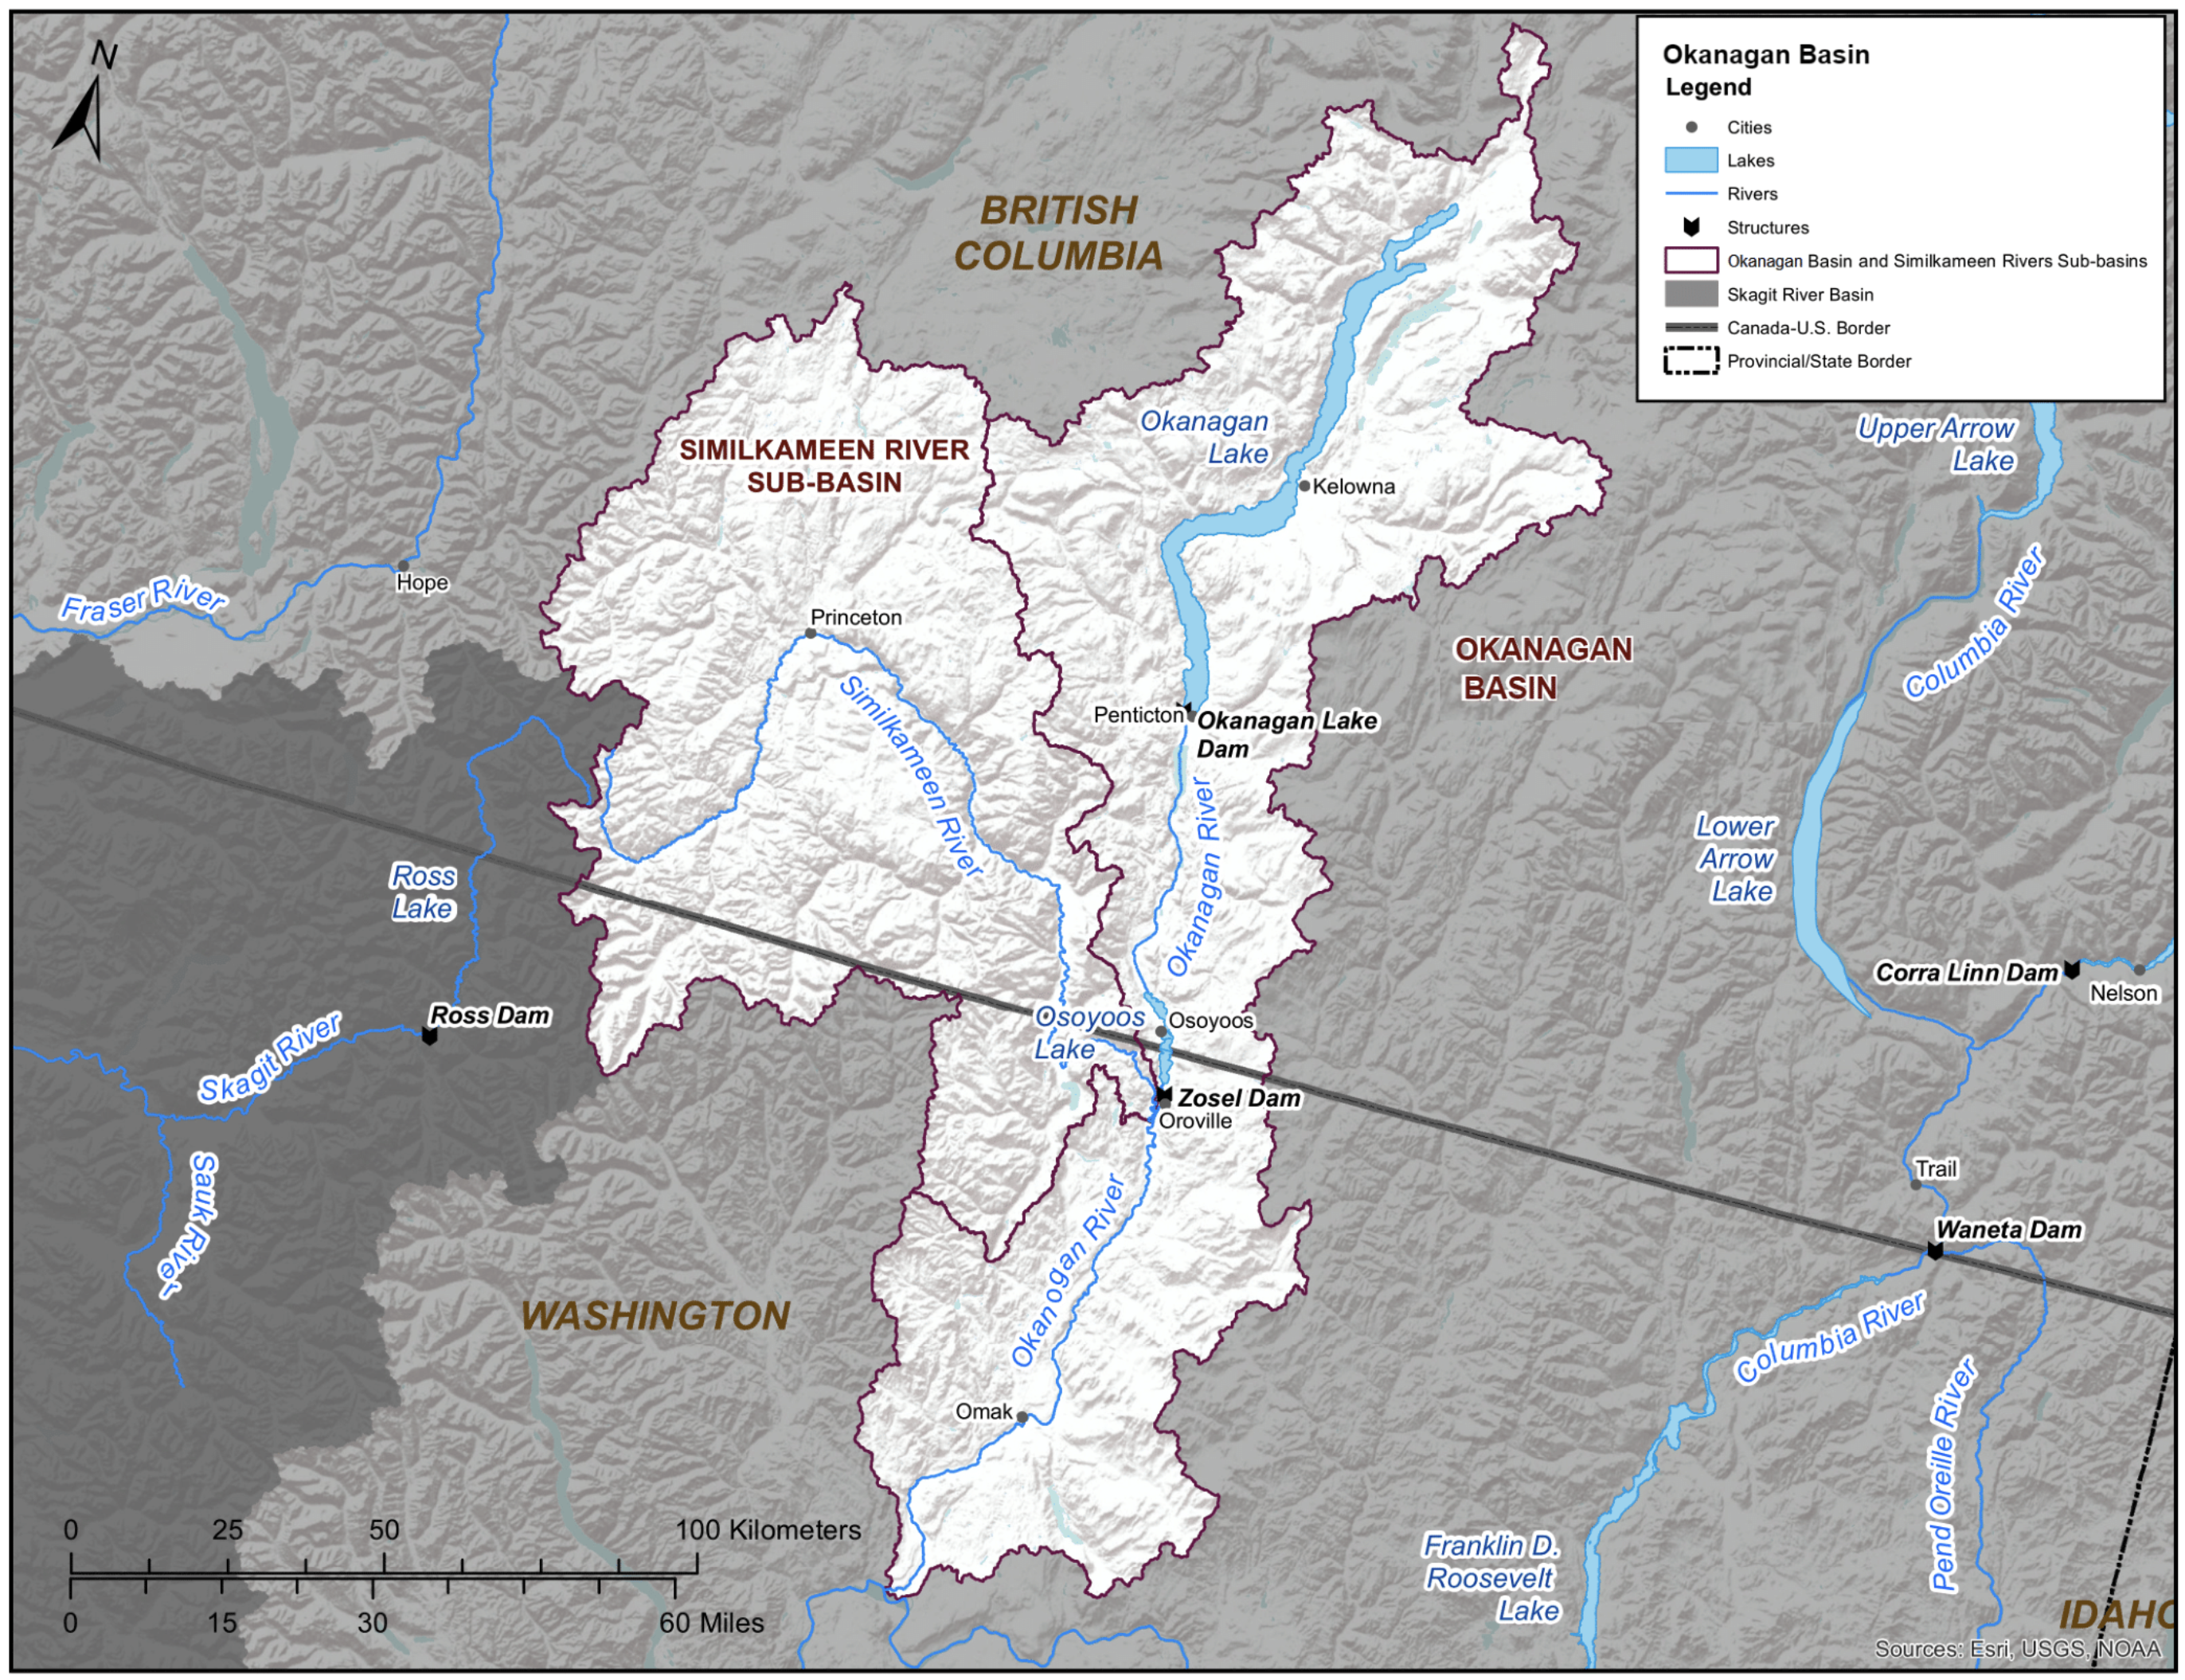 The transboundary Okanagan/Okanogan watershed